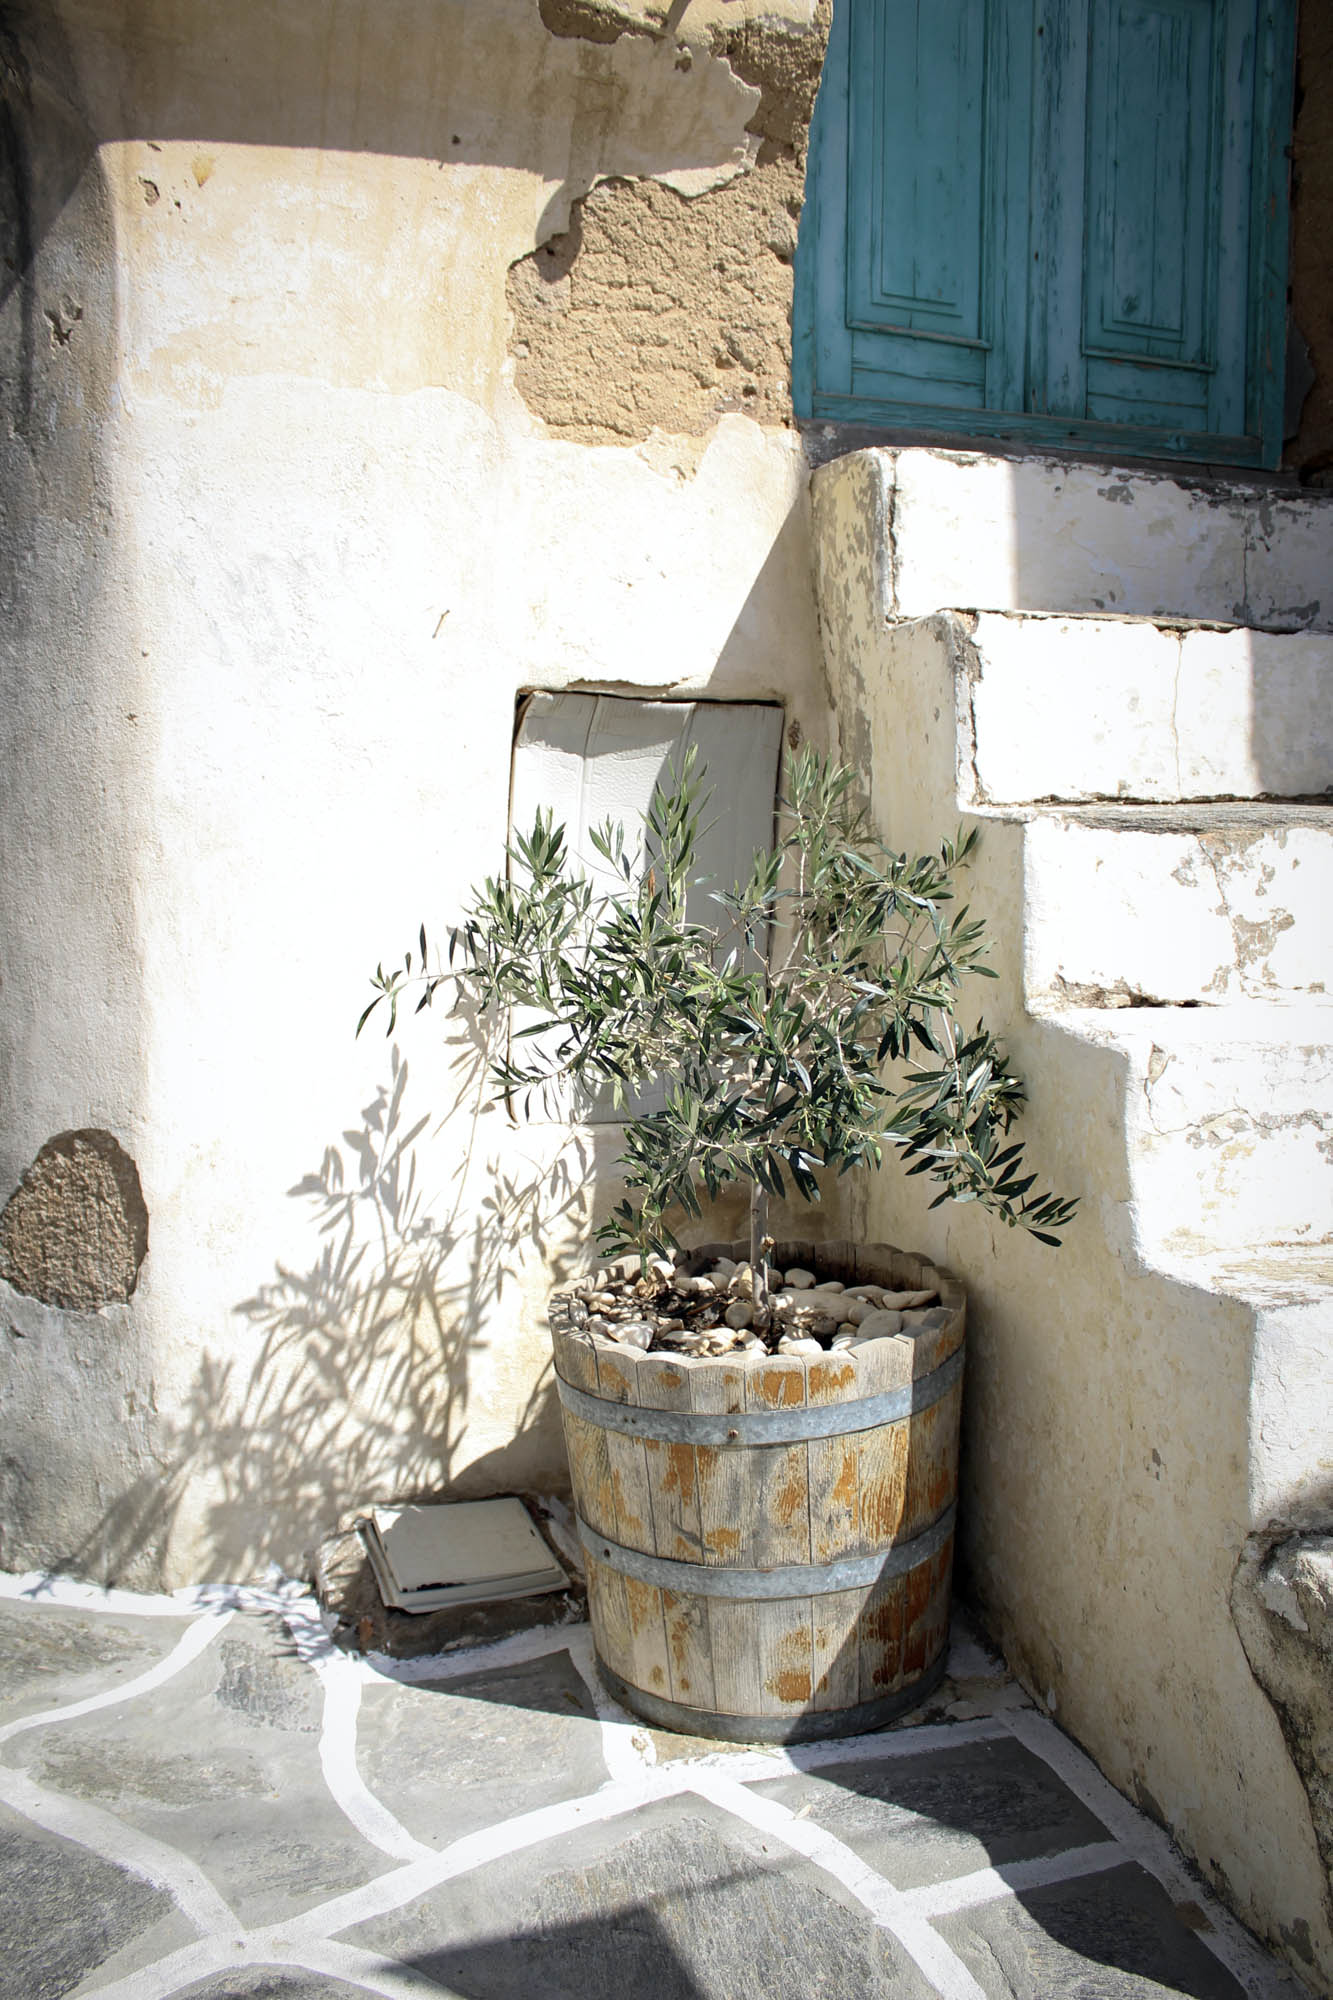 drzewko oliwne w donicy stojącej przy schodach, greckie klimaty